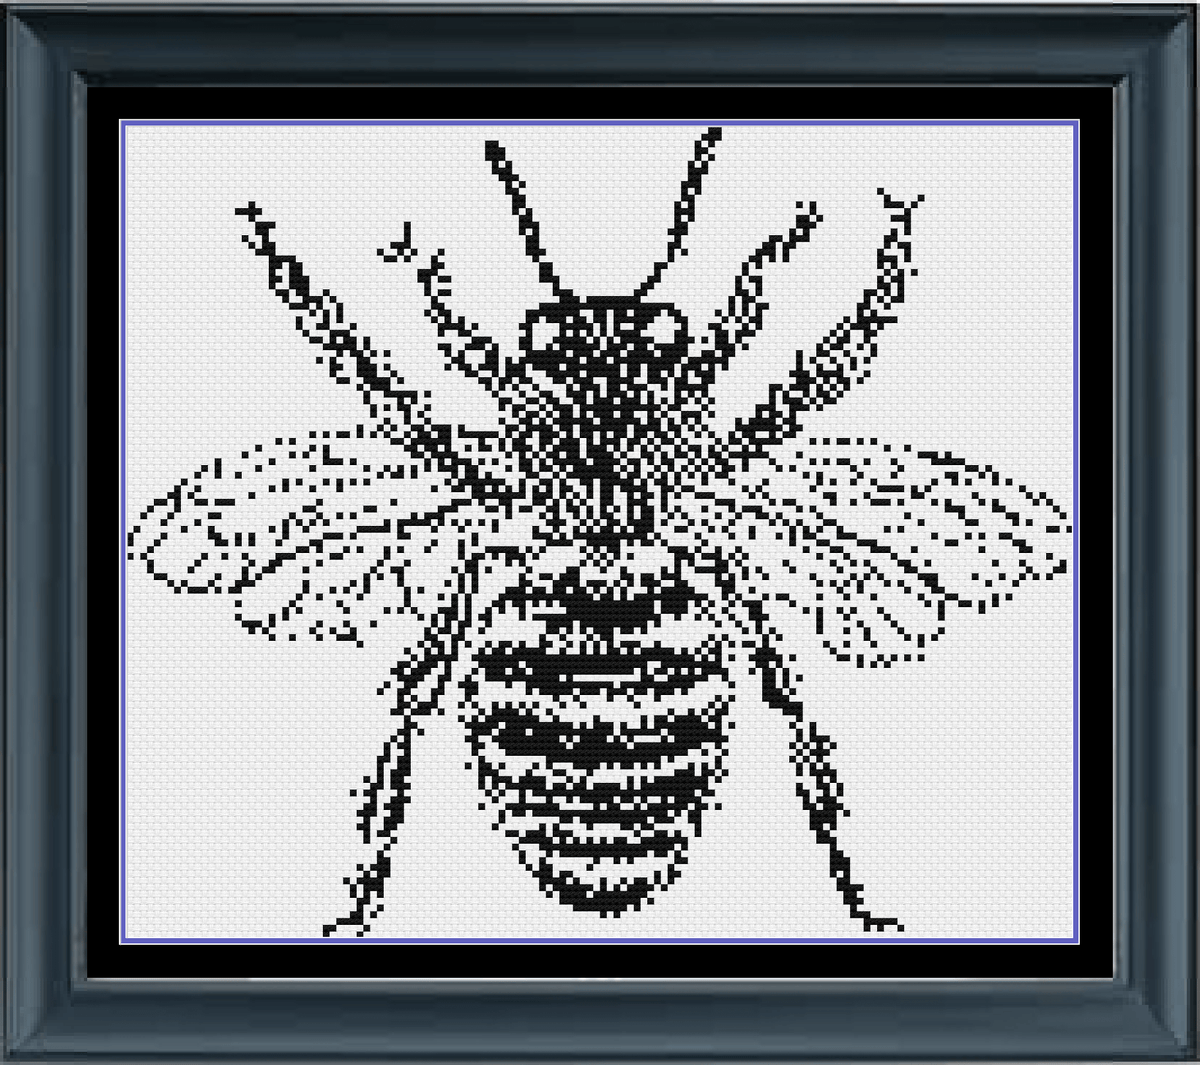 Bee Cross Stitch Pattern, Monochrome Cross Stitch